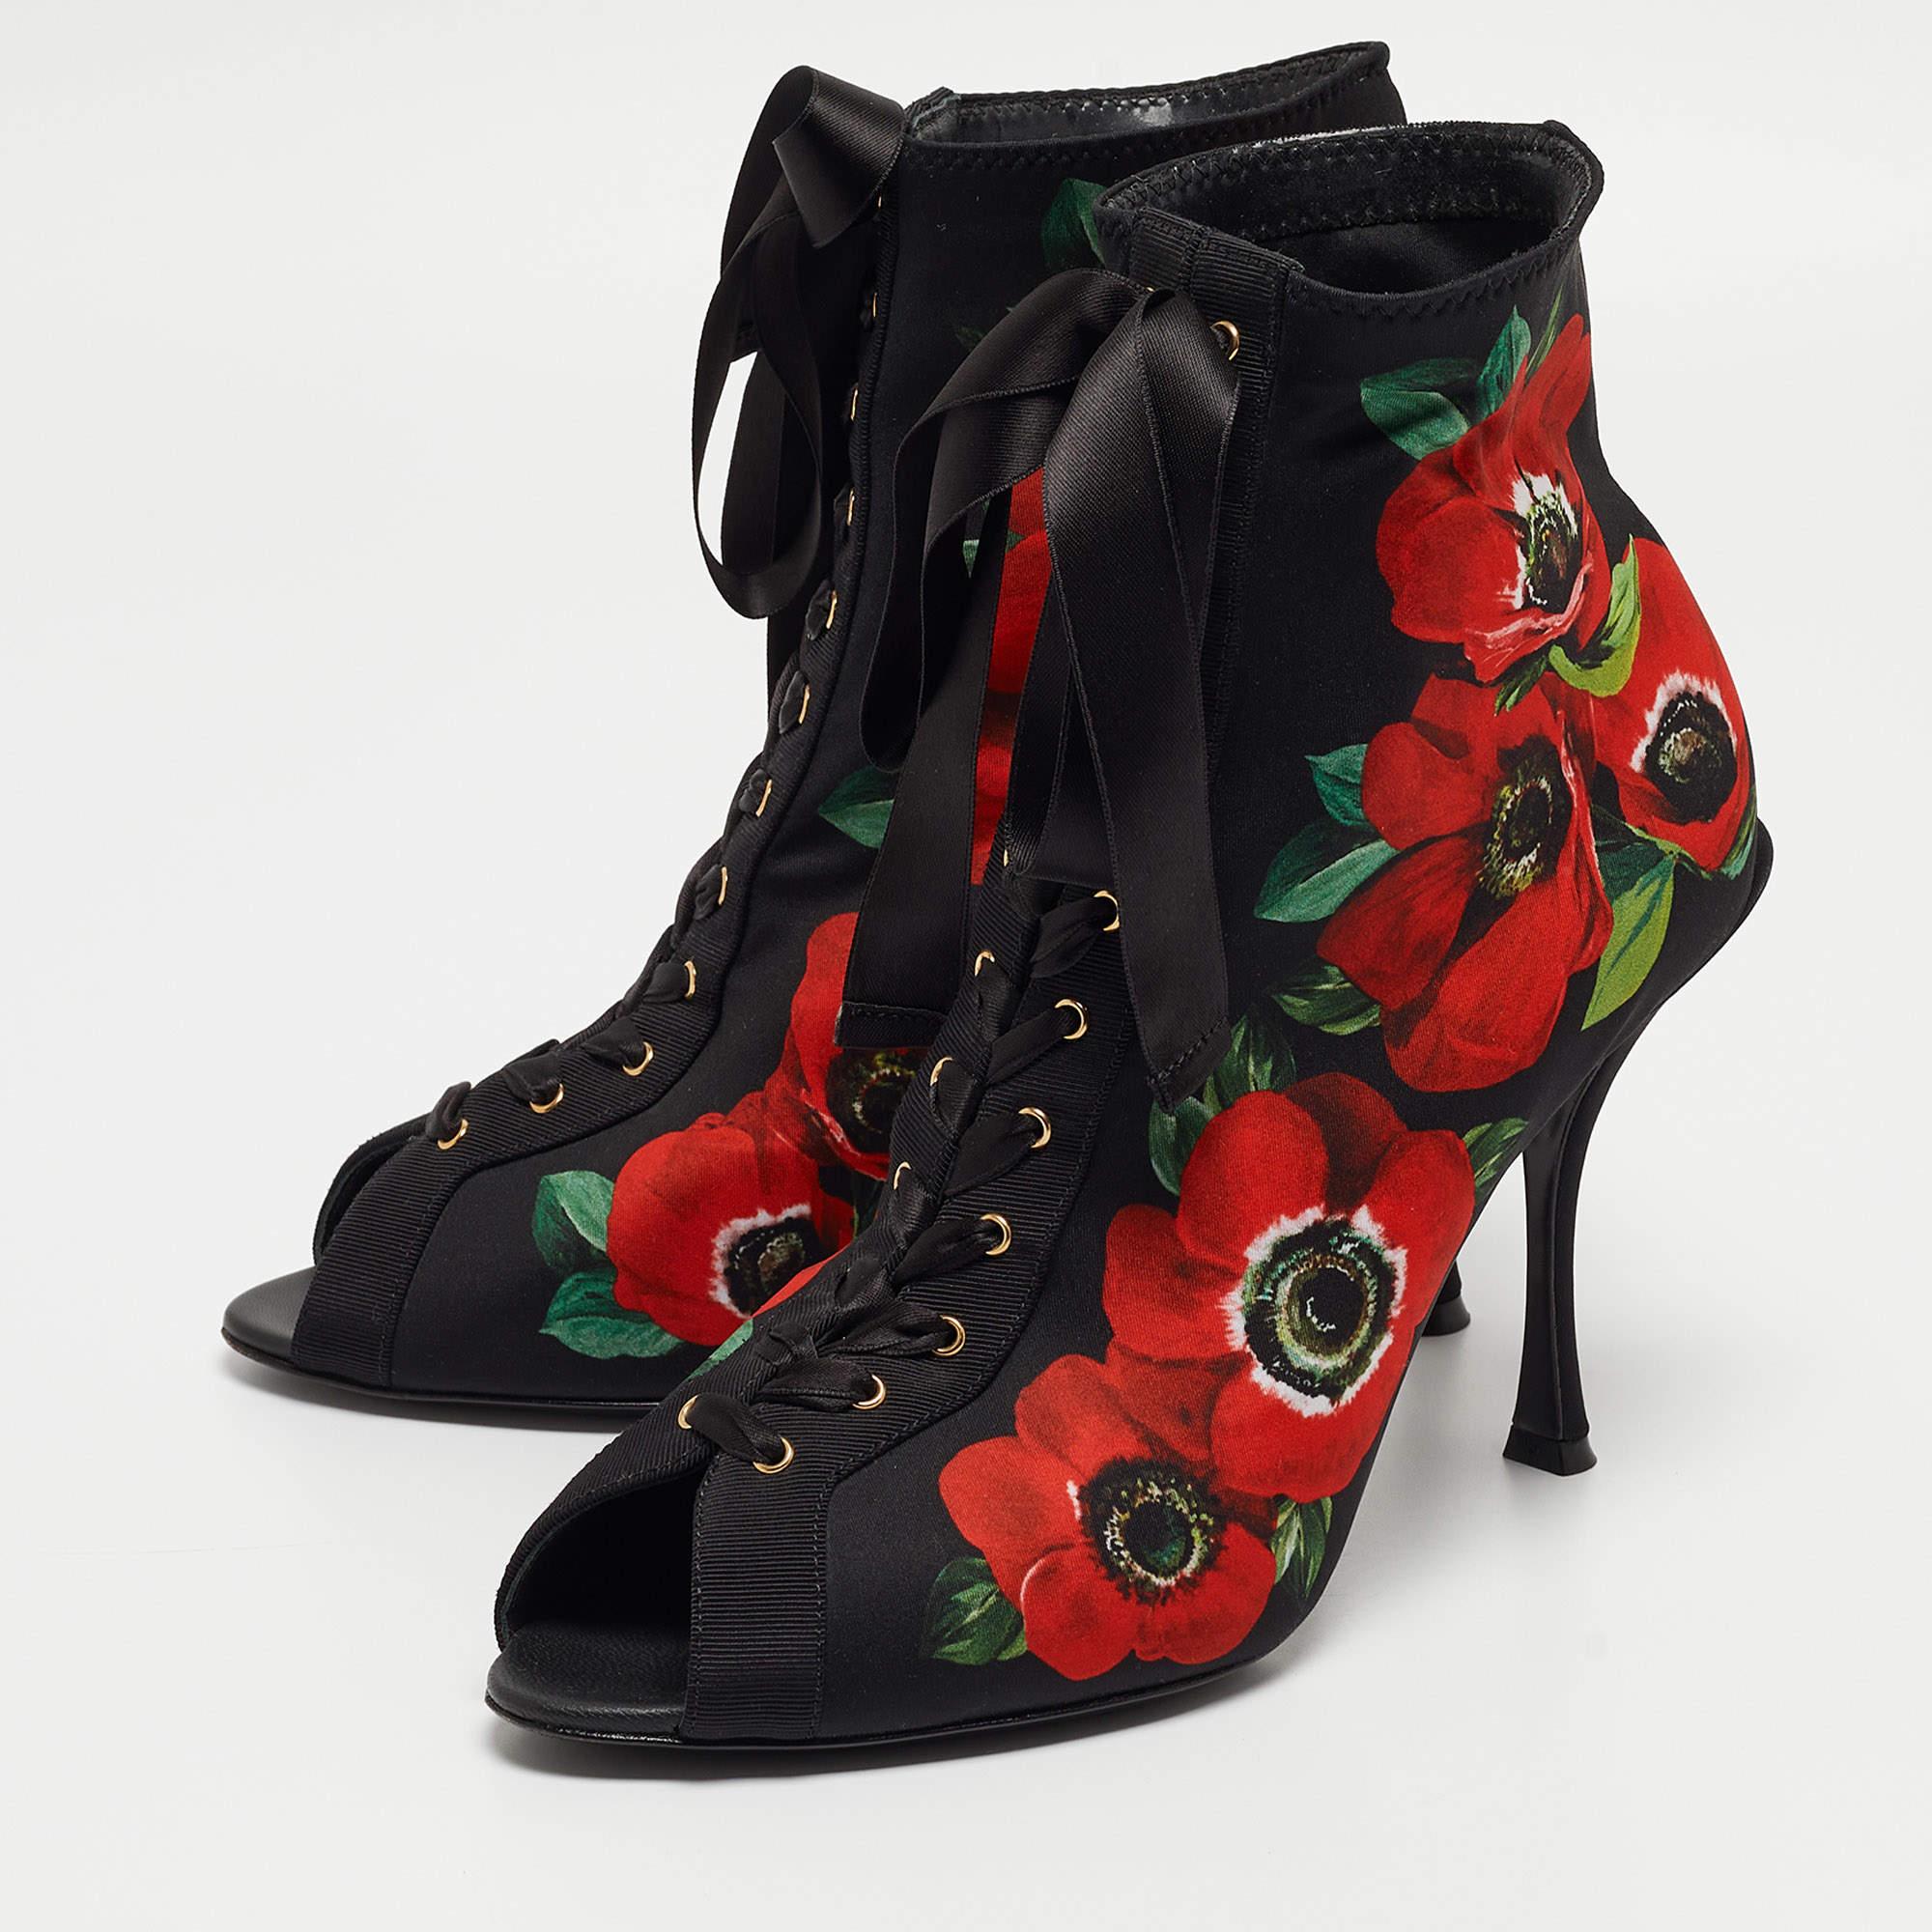 Diese sorgfältig in einer eleganten Silhouette entworfenen Dolce & Gabbana-Stiefel sind ein echter Stilbruch. Sie verfügen über bequeme Einlegesohlen und strapazierfähige Laufsohlen für eine lange Lebensdauer. Diese Stiefel sind mit Blumendruck